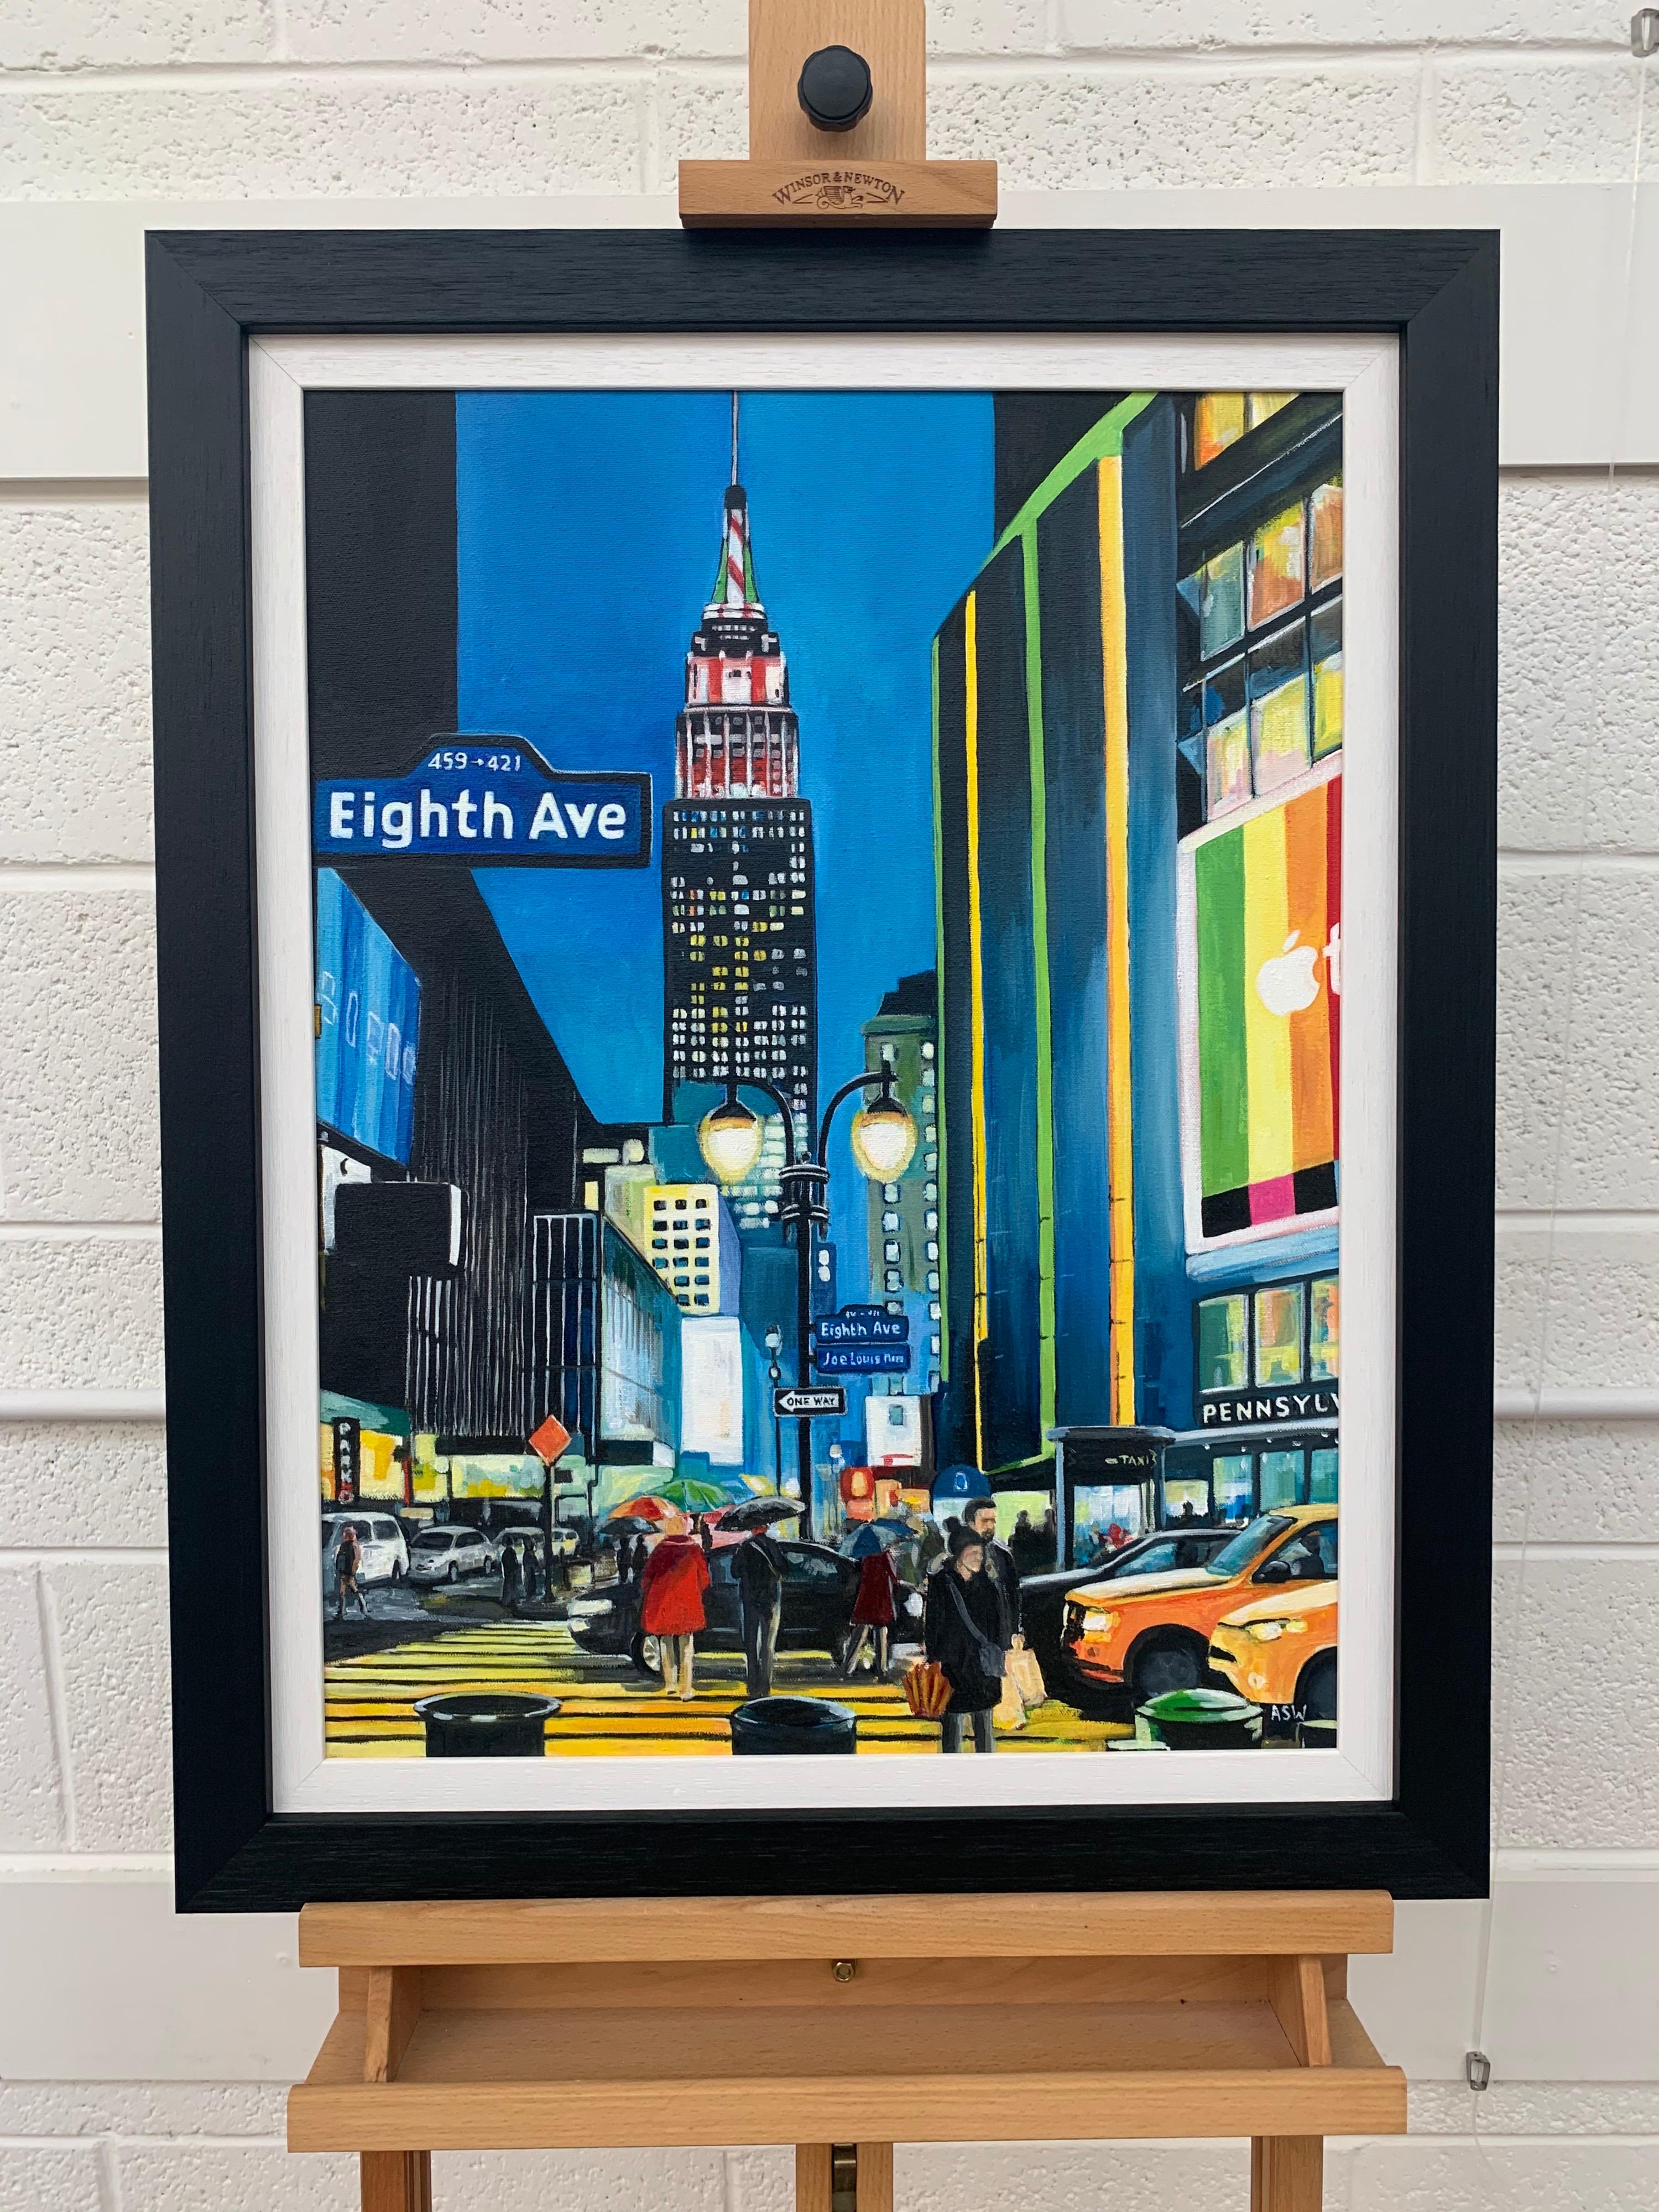 Empire State Building Eighth Avenue New York City von der zeitgenössischen britischen Künstlerin Angela Wakefield. Dies ist ein wichtiges Werk aus ihrer New Yorker Serie.

Kunst misst 18 x 24 Zoll
Rahmen misst 23 x 29 Zoll

Wakefields Werk ist eine